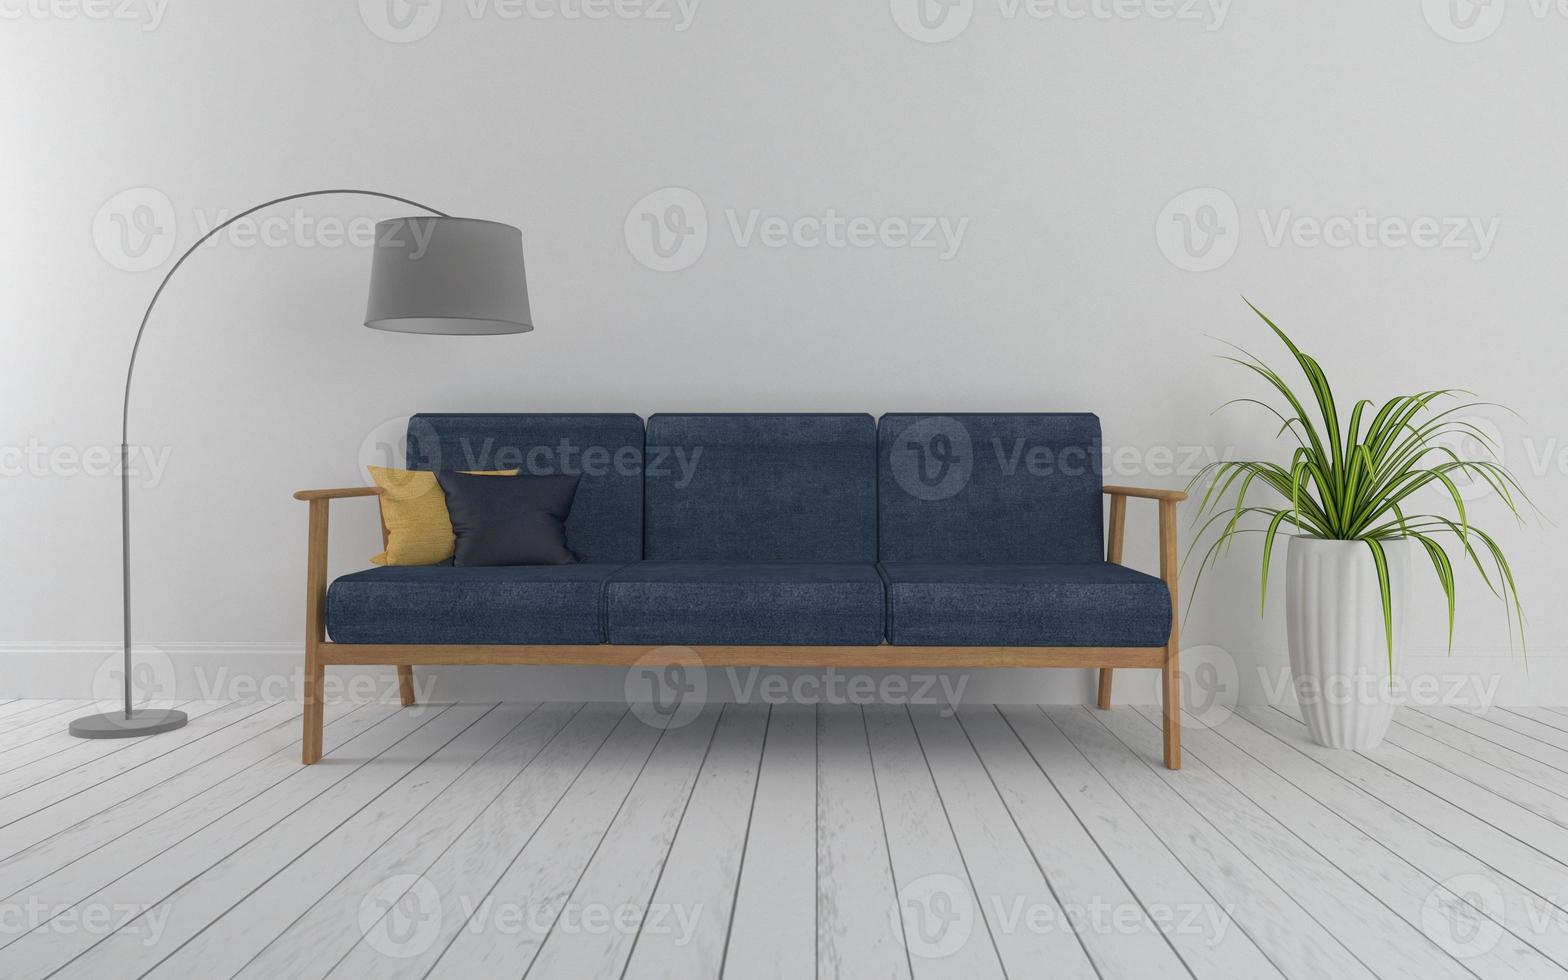 Realistisches 3D-Modell des Innenraums des modernen Wohnzimmers mit Sofa - Couch und Tisch foto